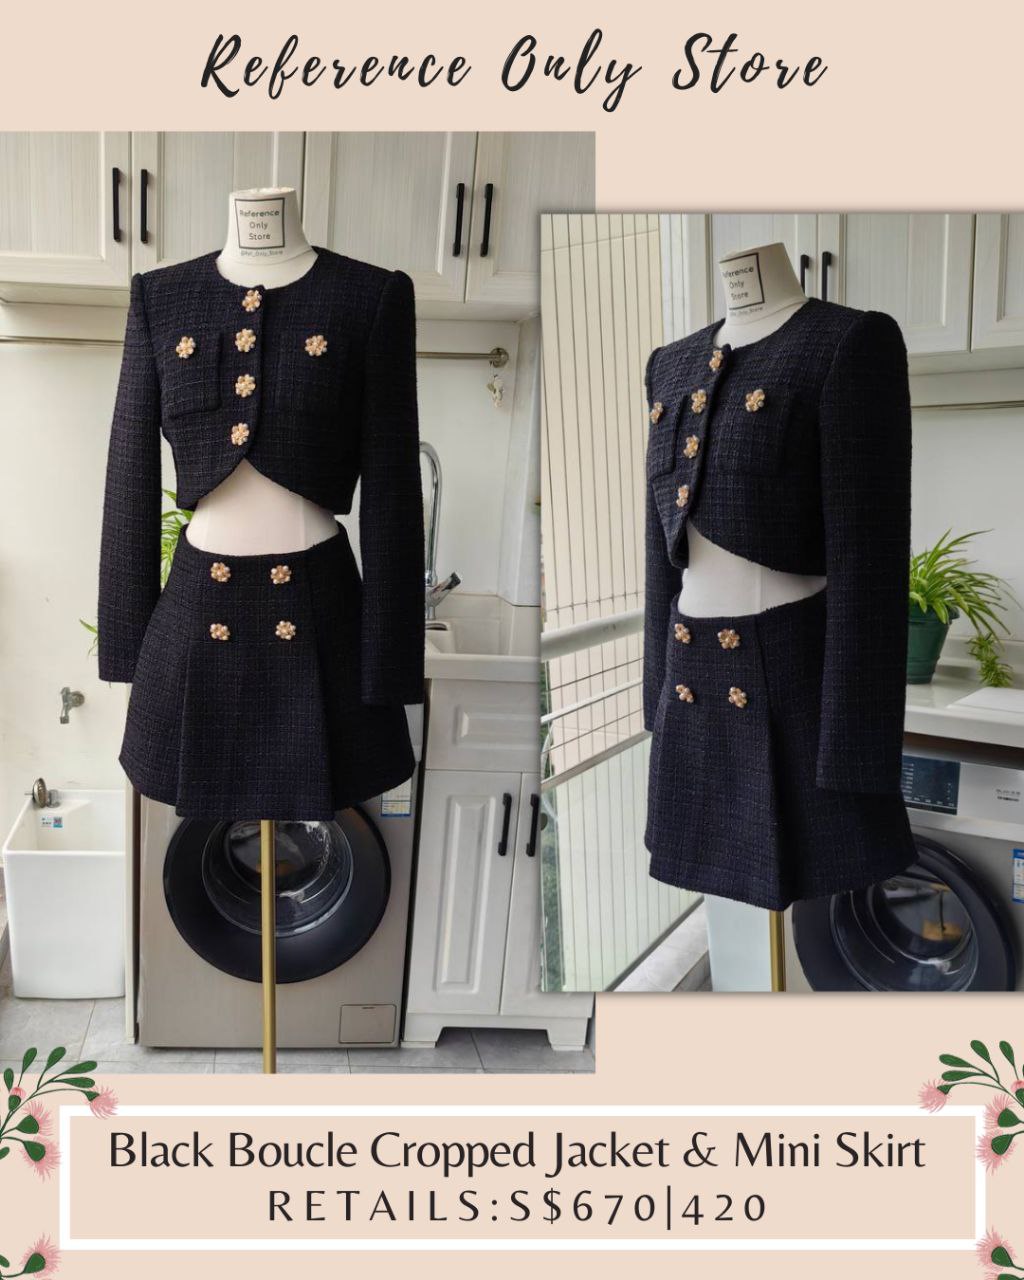 SP Black Boucle Cropped Jacket & Mini Skirt